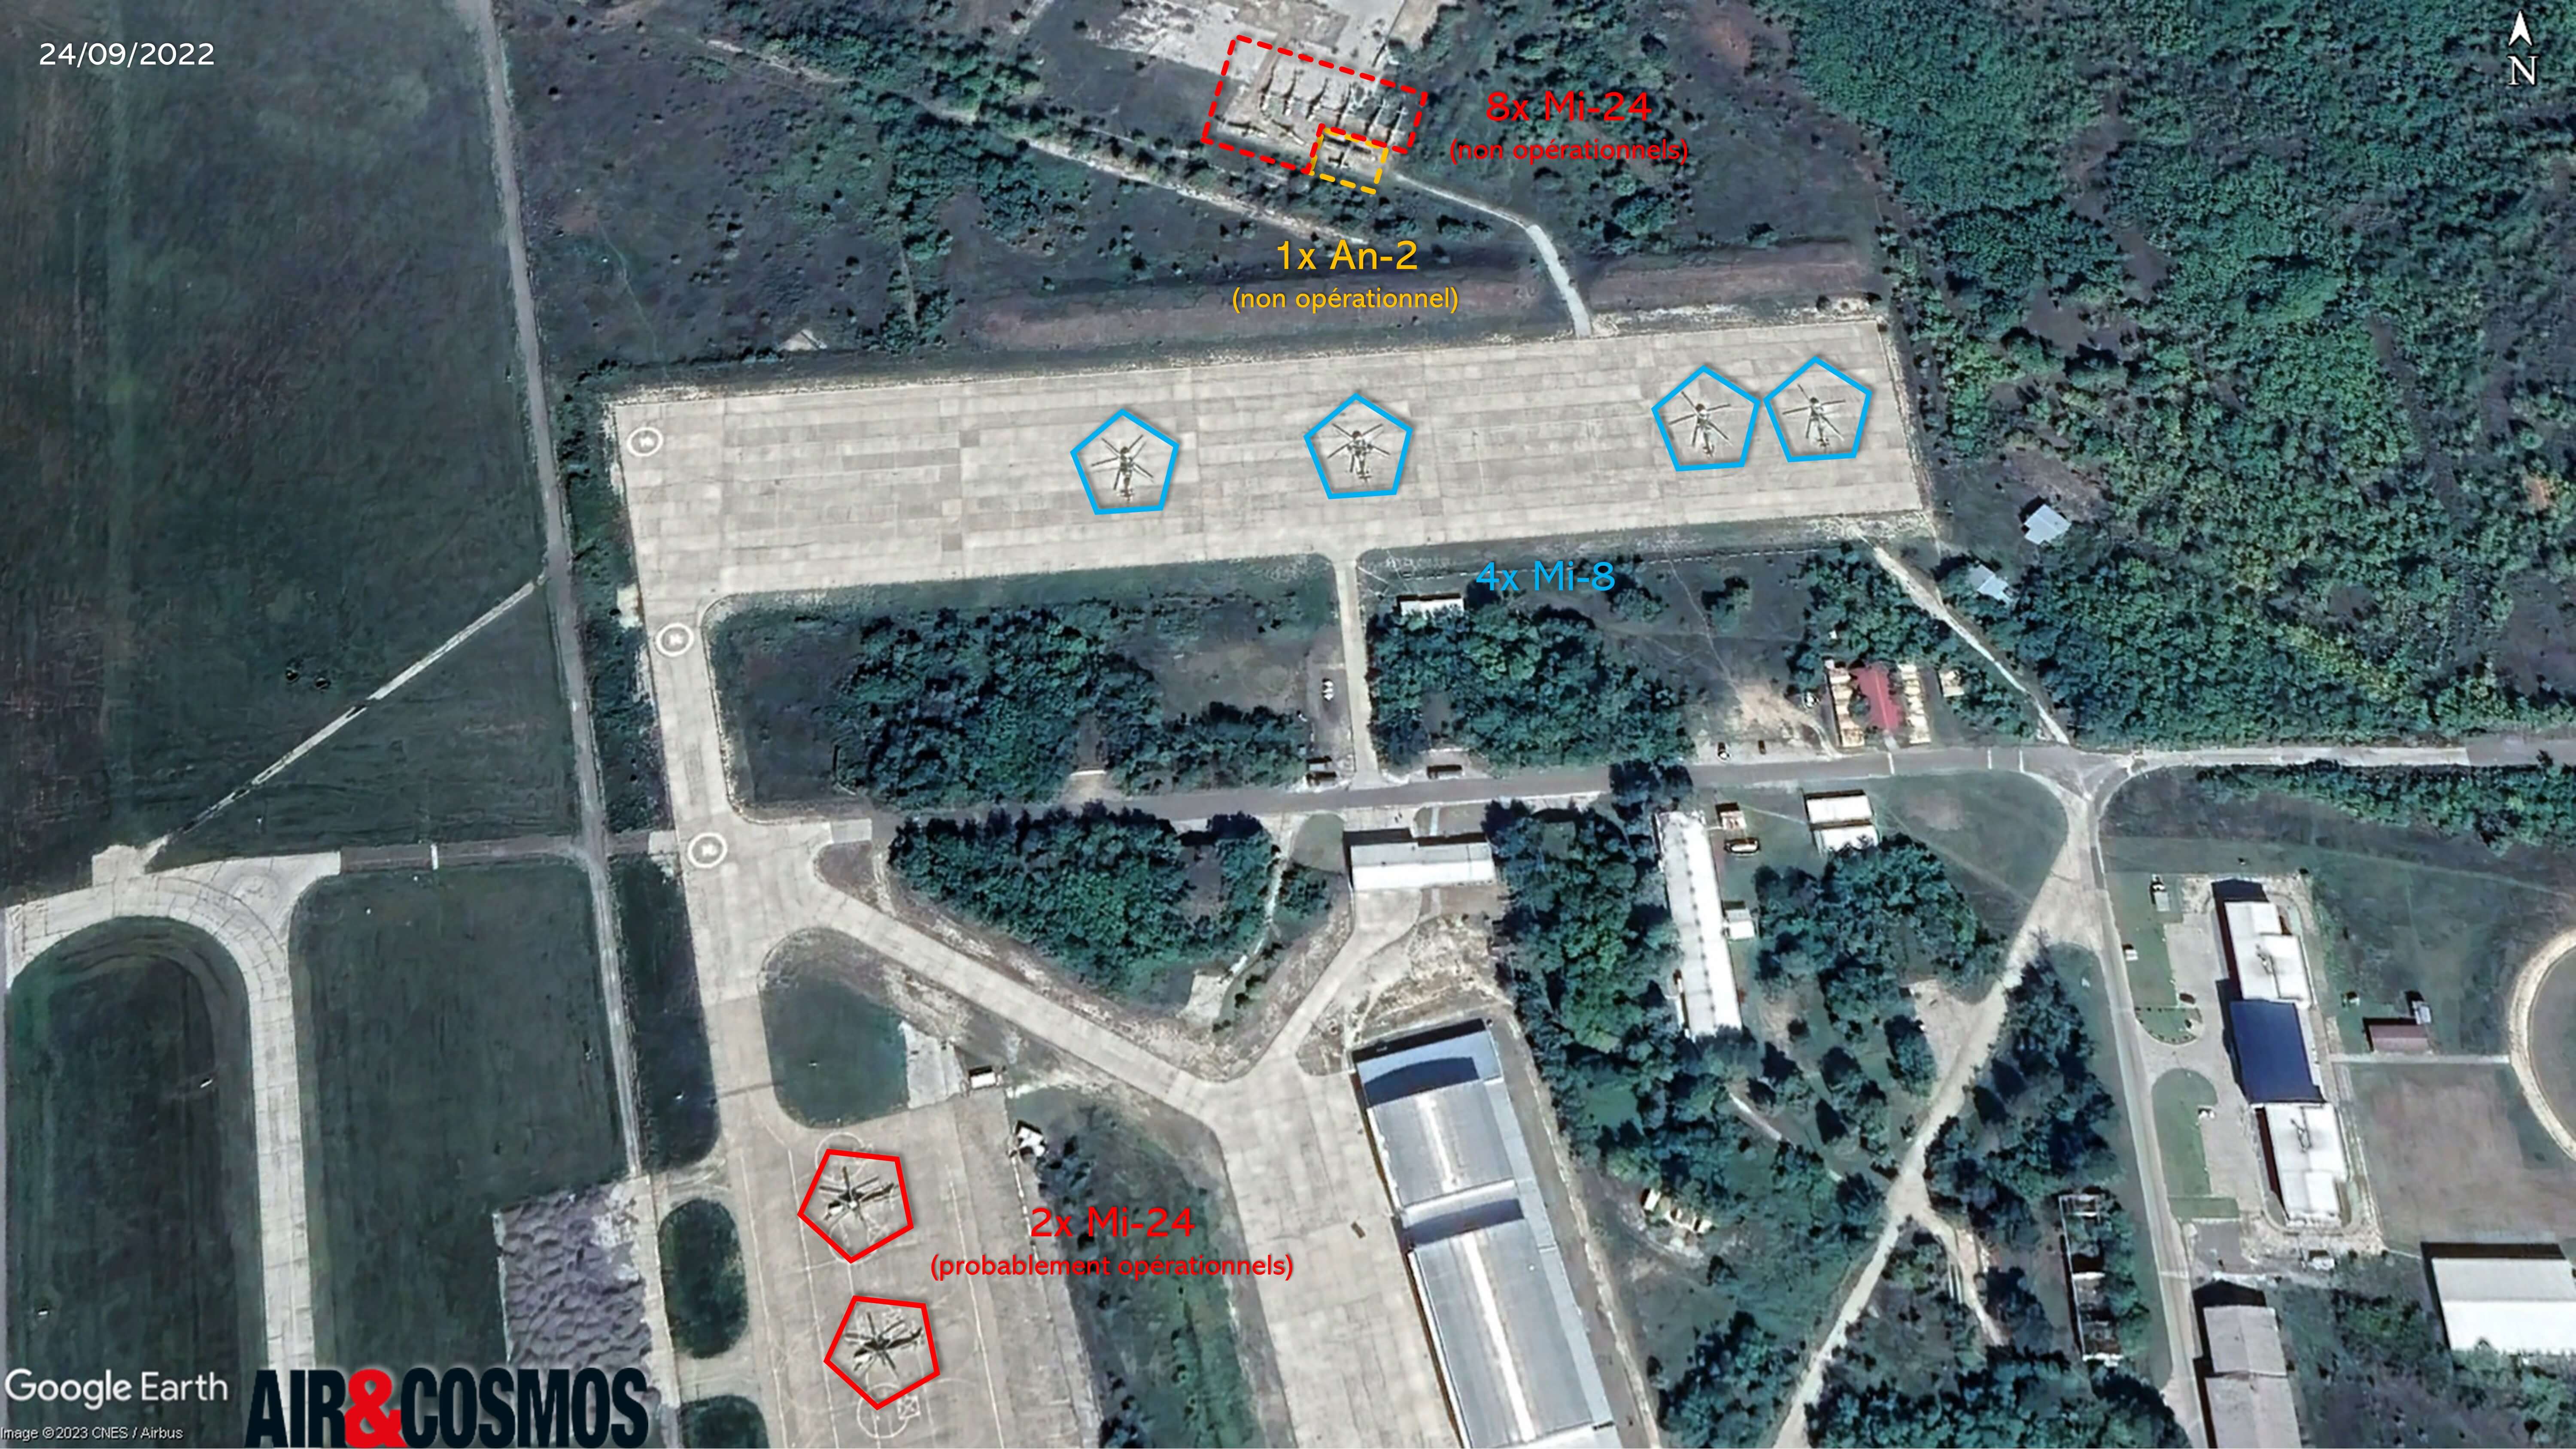 Partie militaire de l'aéroport de Skopje le 24 septembre 2022 avec 8 Mi-24 non opérationnels et 2 Mi-24 probablement opérationnels_Air&Cosmos, Google Earth.jpg